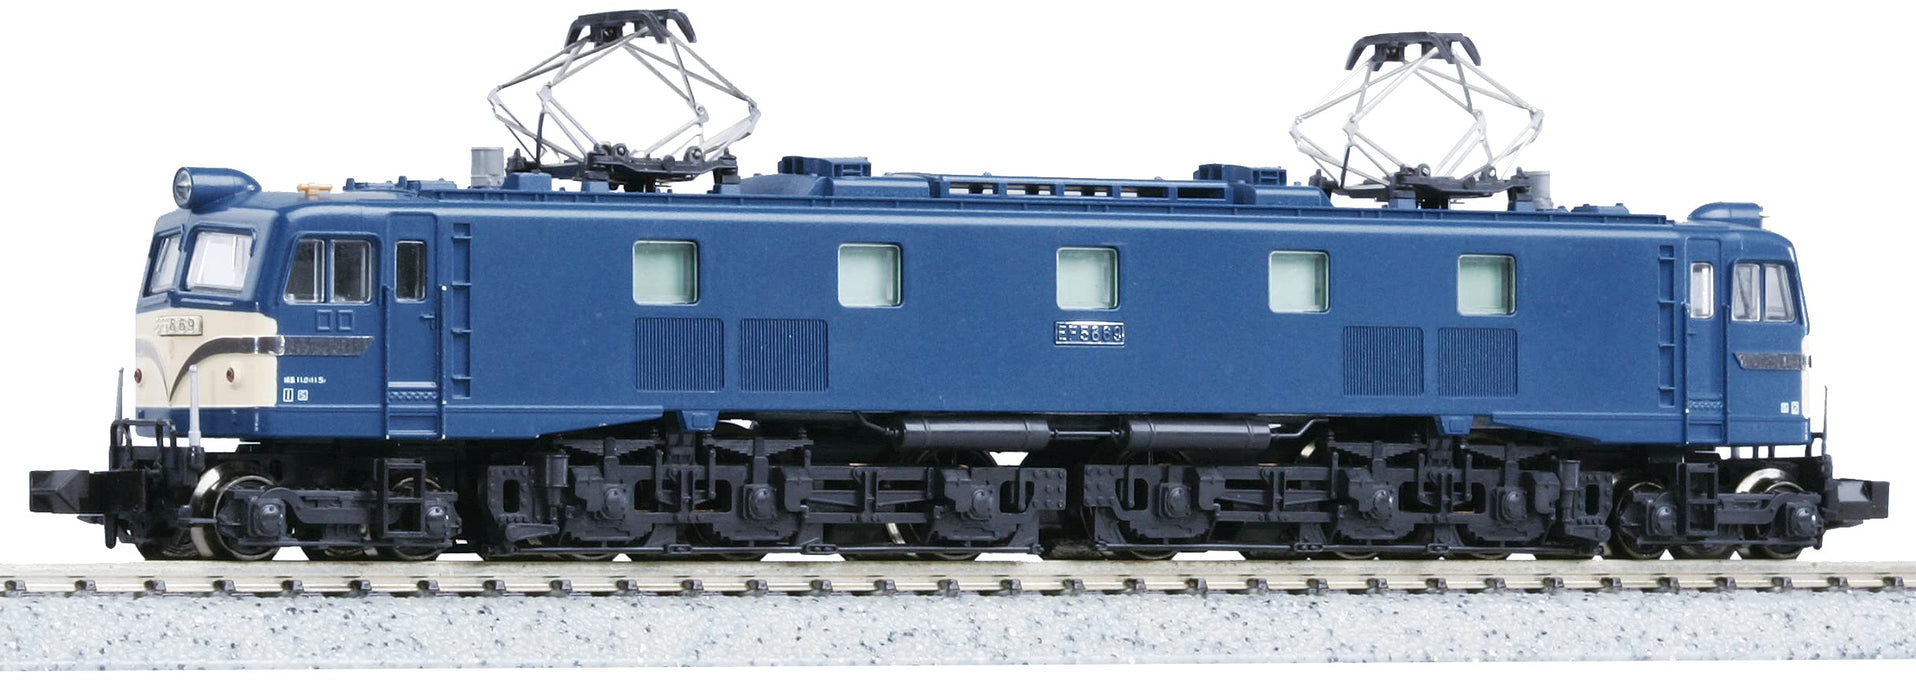 Kato N Gauge 3020-1 Locomotive électrique bleue de type tardif avec grande fenêtre